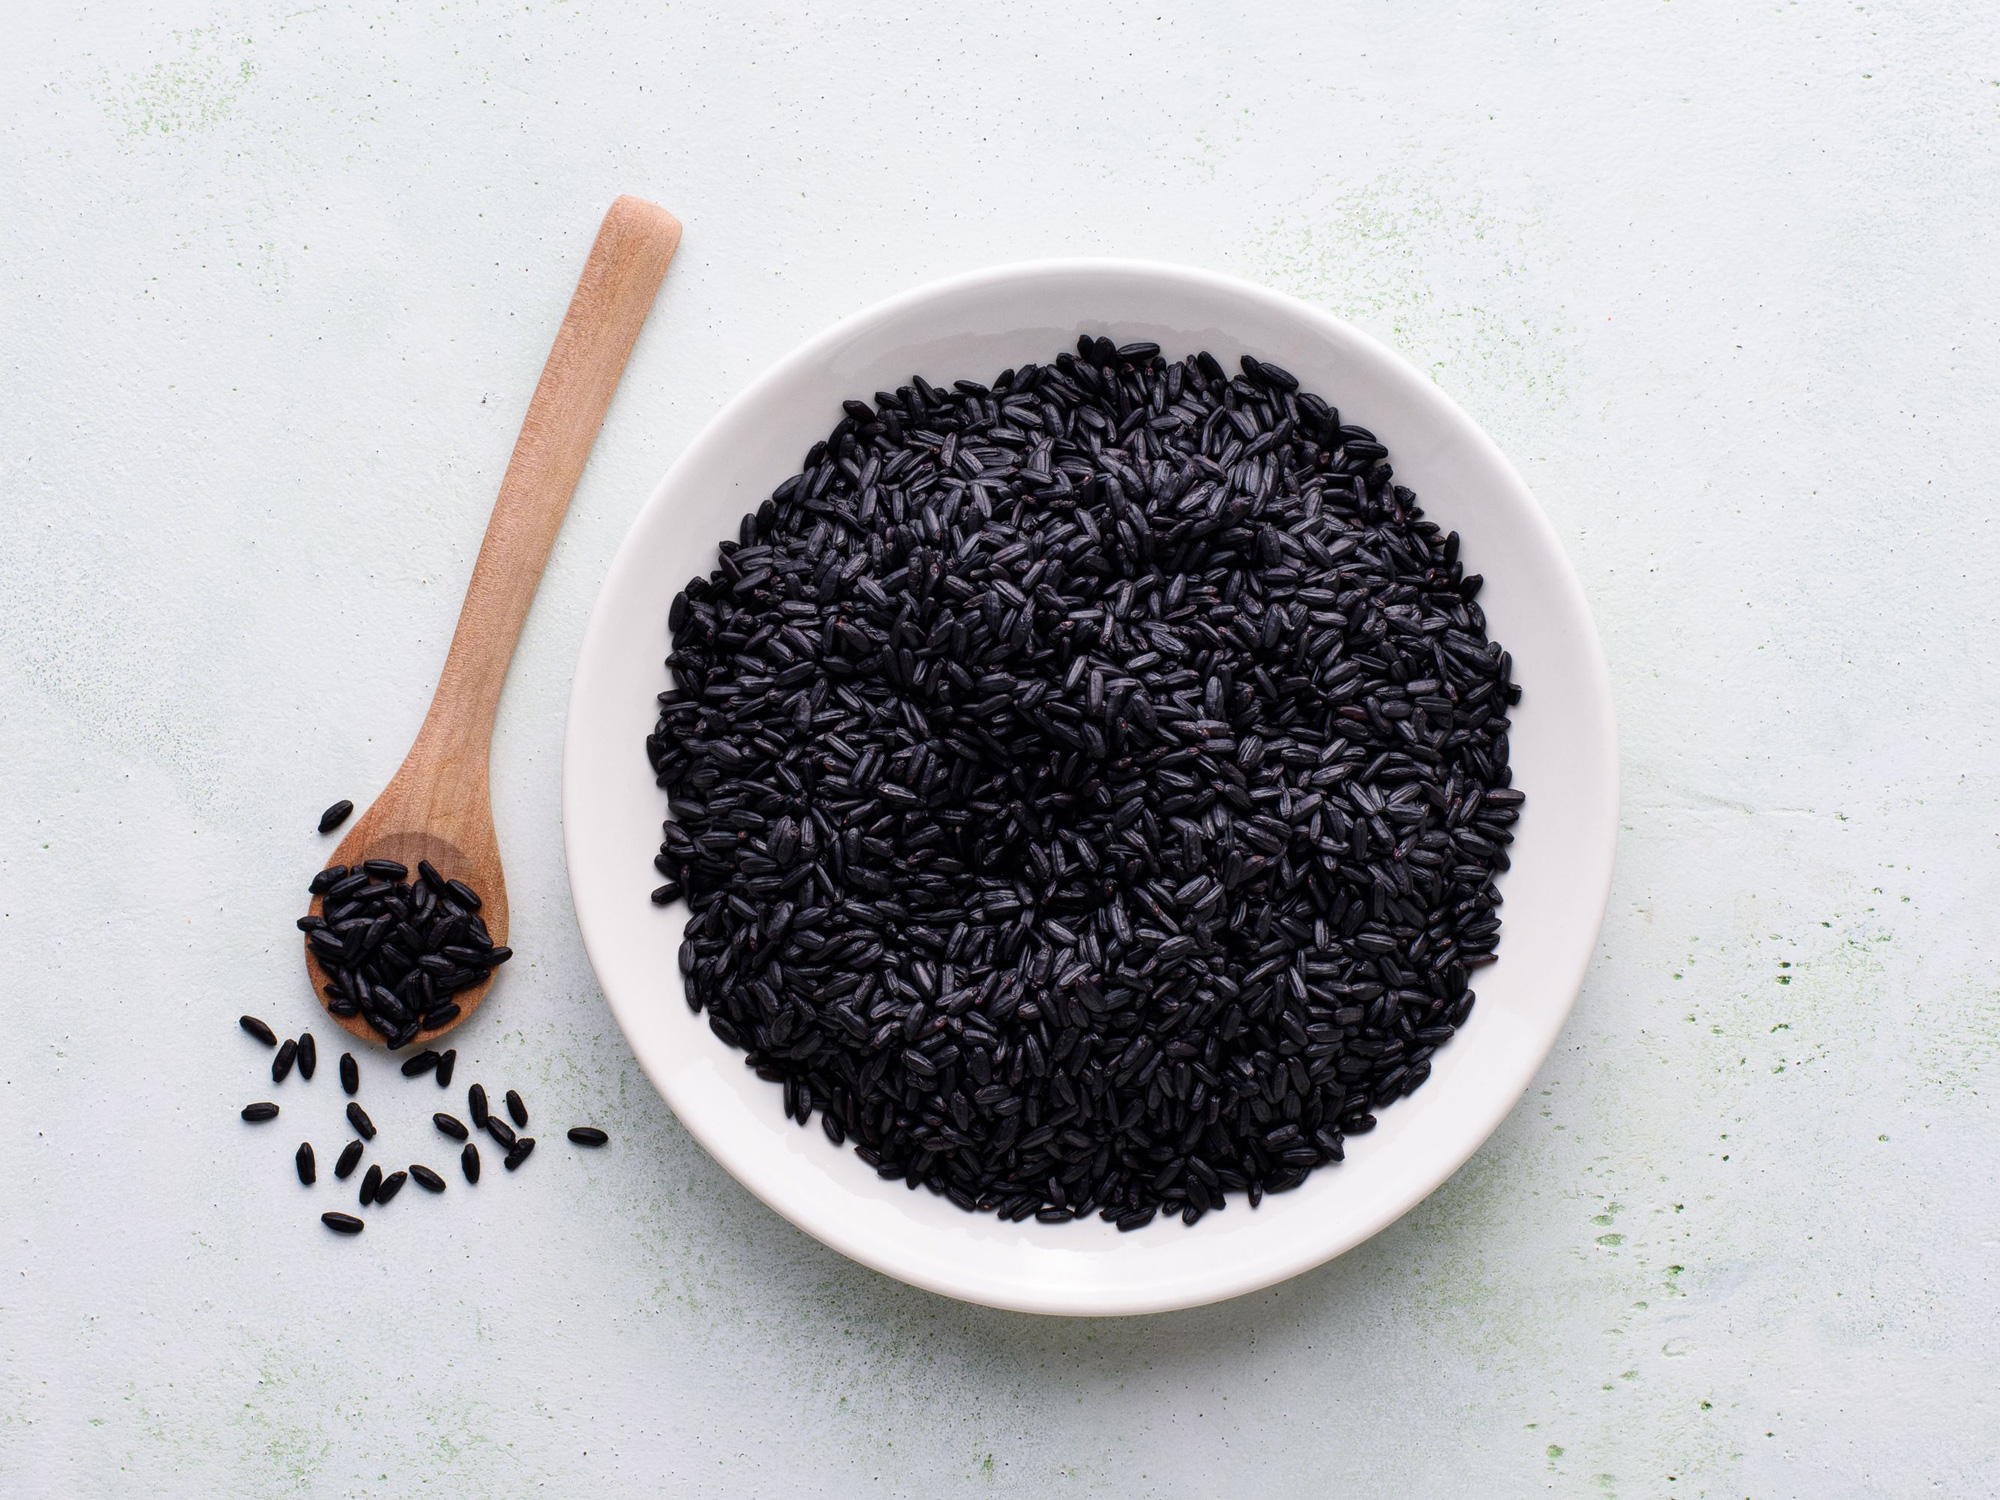 Tóc Tiên, Primmy Trương ăn thứ đen xì này thay cho gạo trắng để giảm cân, tăng collagen - Ảnh 4.